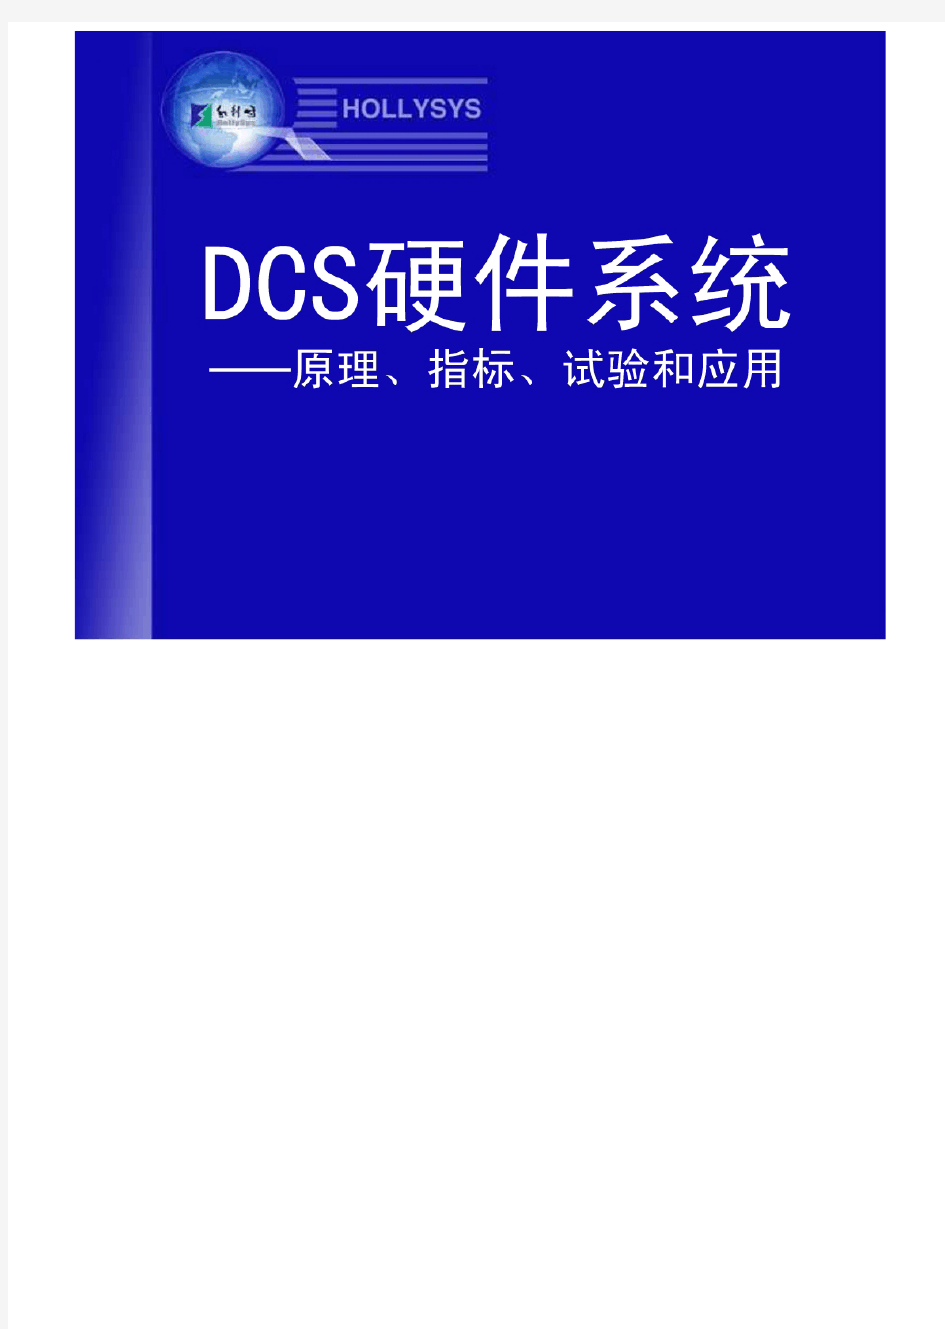 (和利时DCS硬件系统培训)